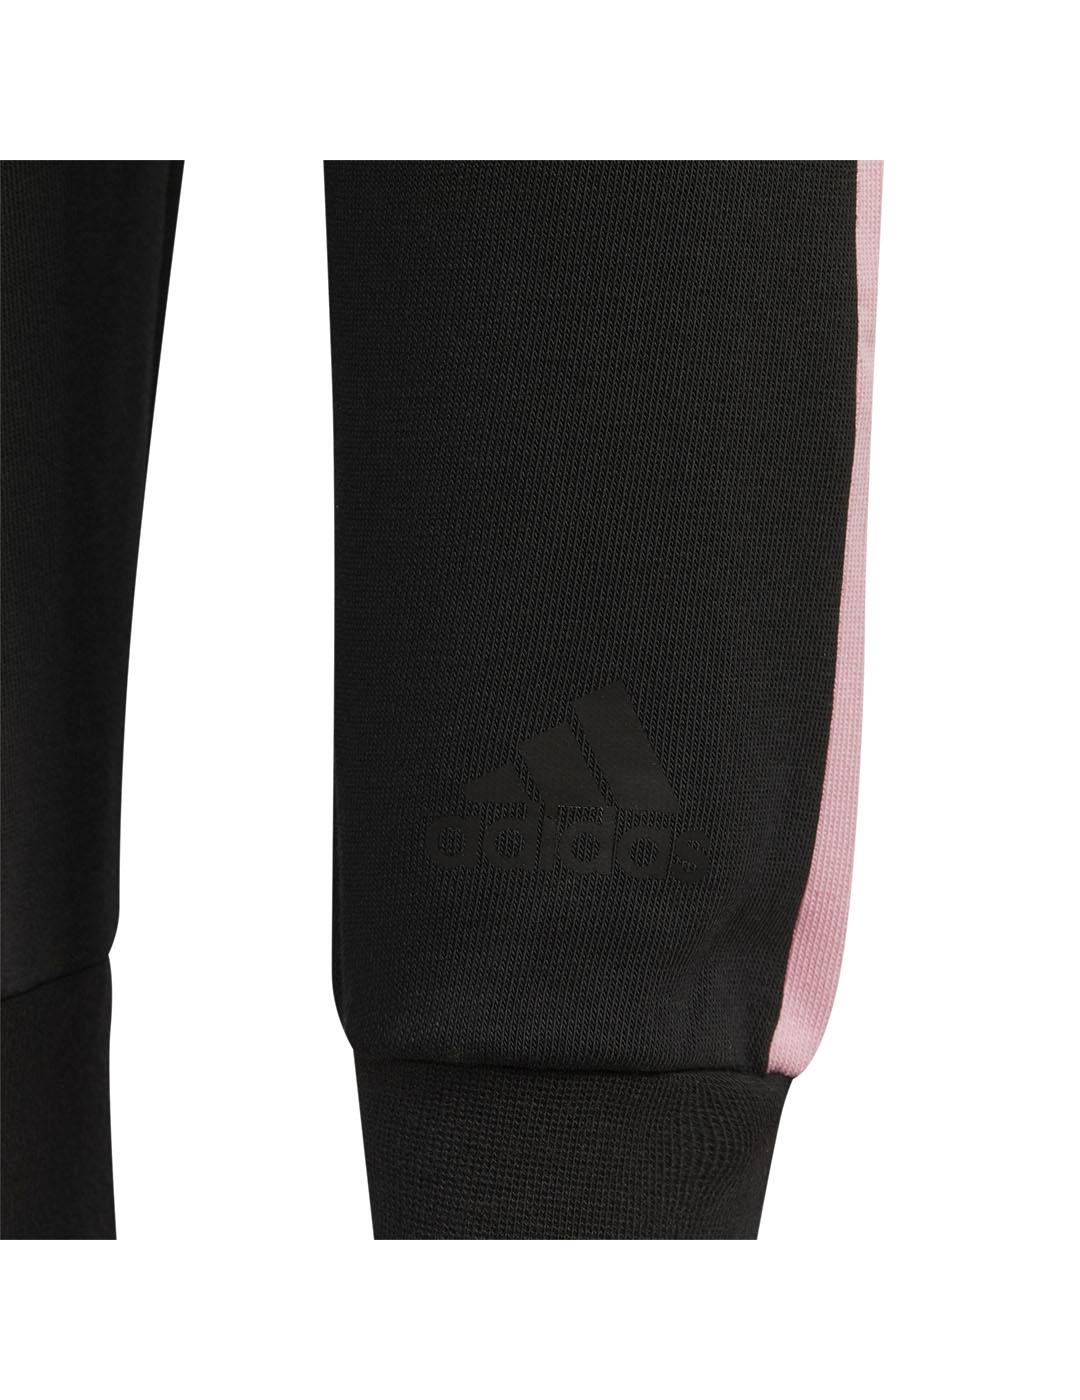 Pantalón Niña adidas Badge Negro/Rosa